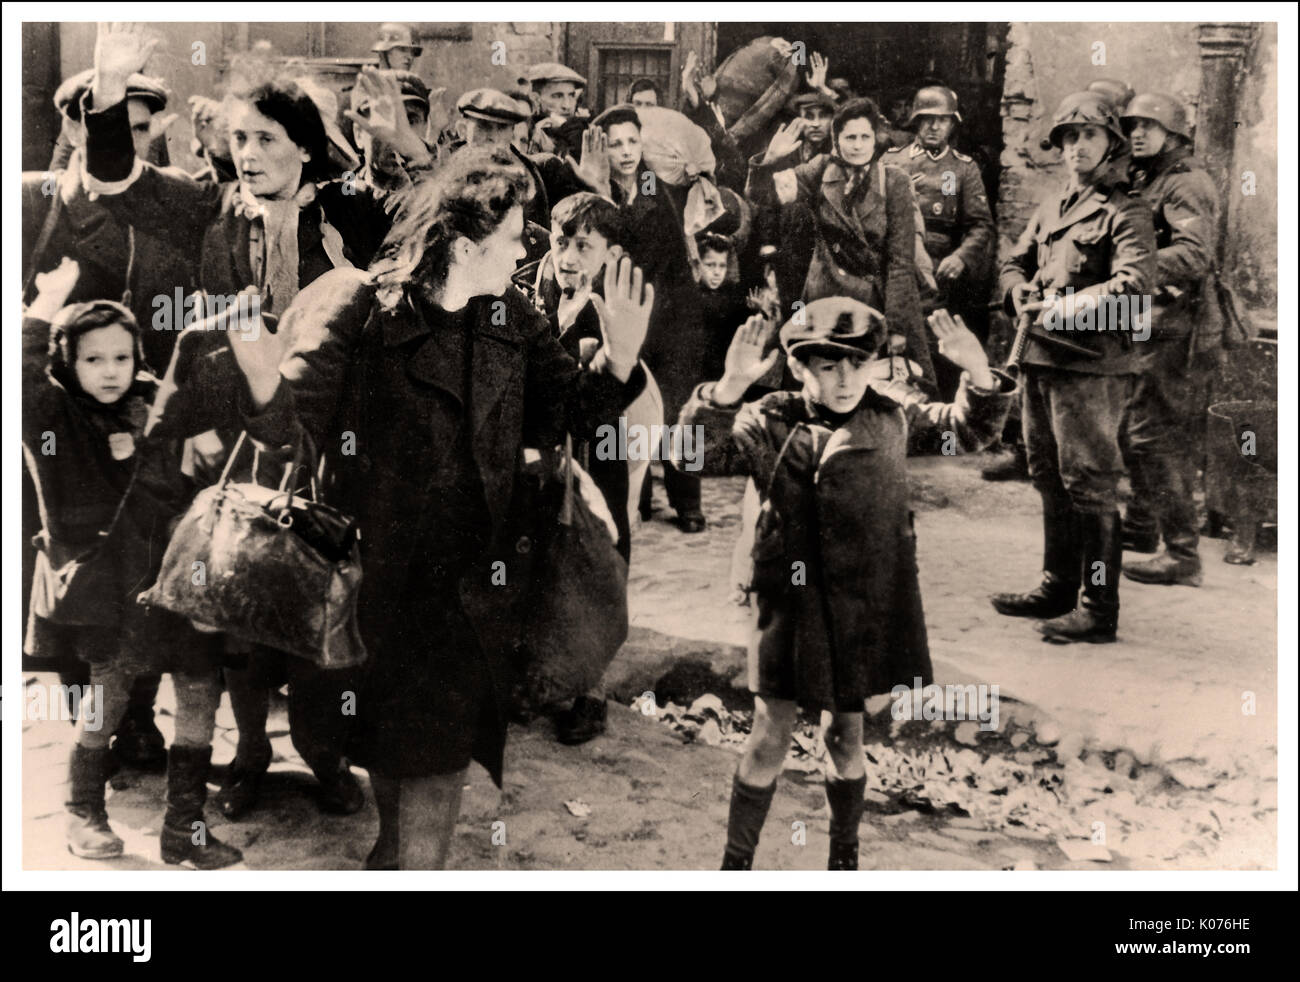 WARSCHAUER GHETTOJUNGE ÜBERGABE JÜDISCHE FRAUEN und KINDER Dieses ergreifende Bild aus dem Jahr WW2 zeigt jüdische Männer Frauen und Kinder aus dem Warschauer Ghetto, die sich nach dem mutigen, tapferen Aufstand deutschen Soldaten ergeben. Evakuierung des Warschauer Ghettos, die während der Nürnberger Gerichtsverfahren als Beweismittel verwendet wurde ( Stroop-Bericht), 1945/6. Beachten Sie den kleinen polnischen Jungen im mittleren Hintergrund mit bewundernswertem Widerstand gegen den nationalsozialistischen deutschen Fotografen, der seine Zunge vor die Kamera streute Stockfoto